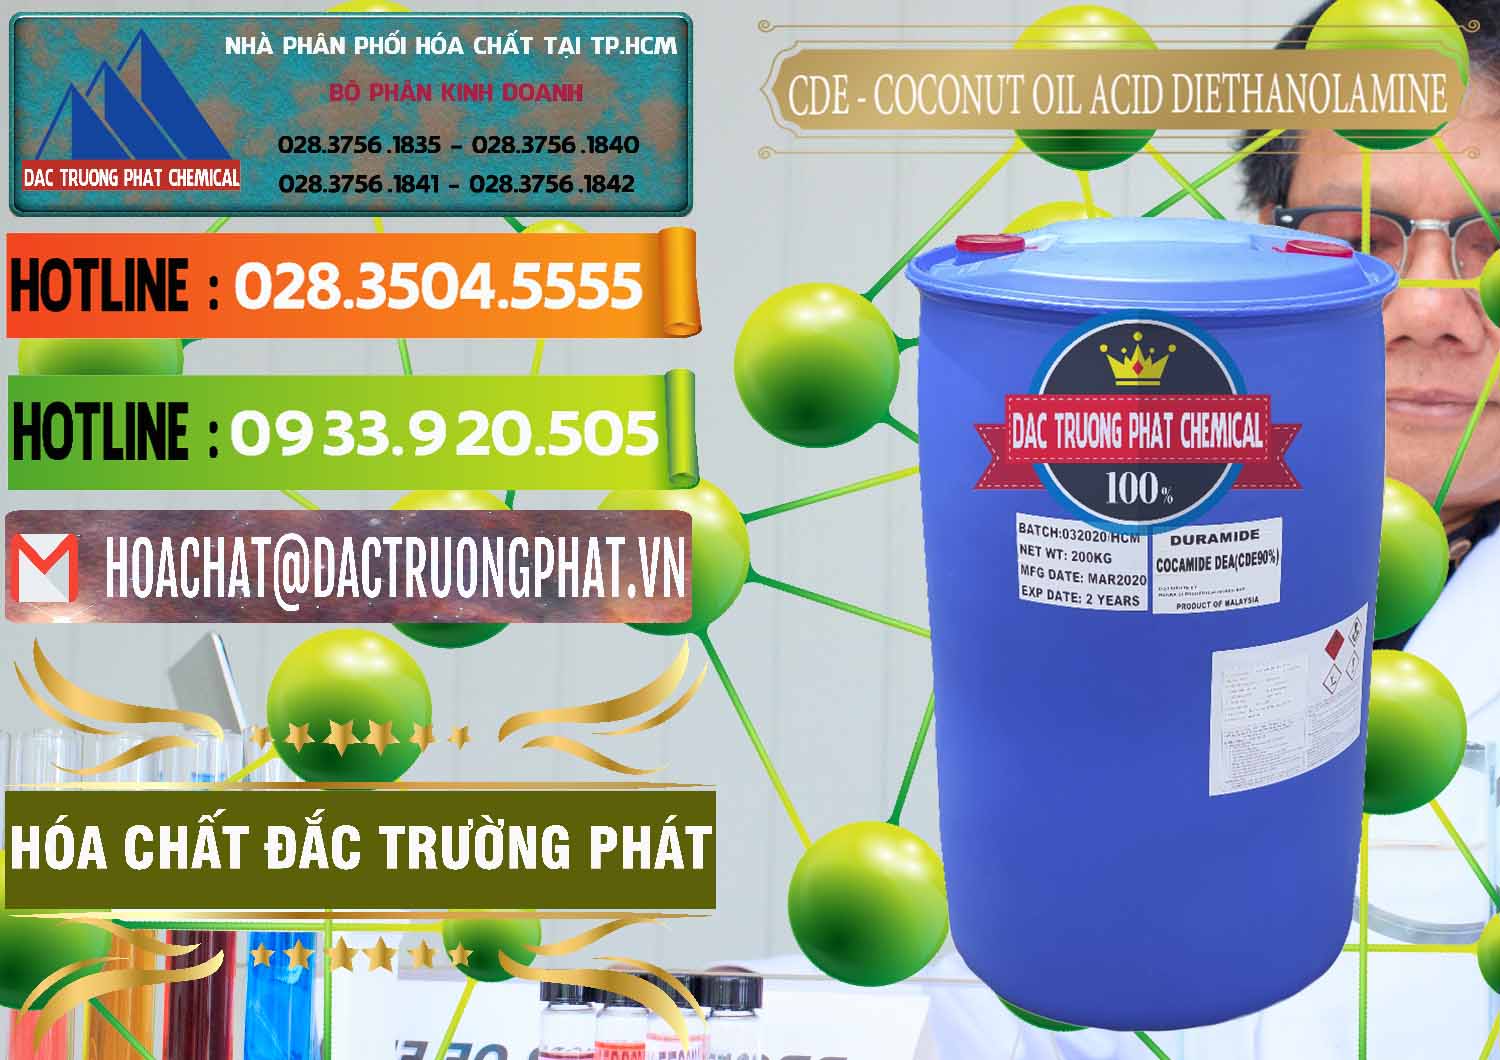 Chuyên cung ứng & bán CDE - Coconut Oil Acid Diethanolamine Mã Lai Malaysia - 0311 - Cty chuyên phân phối & cung ứng hóa chất tại TP.HCM - cungcaphoachat.com.vn